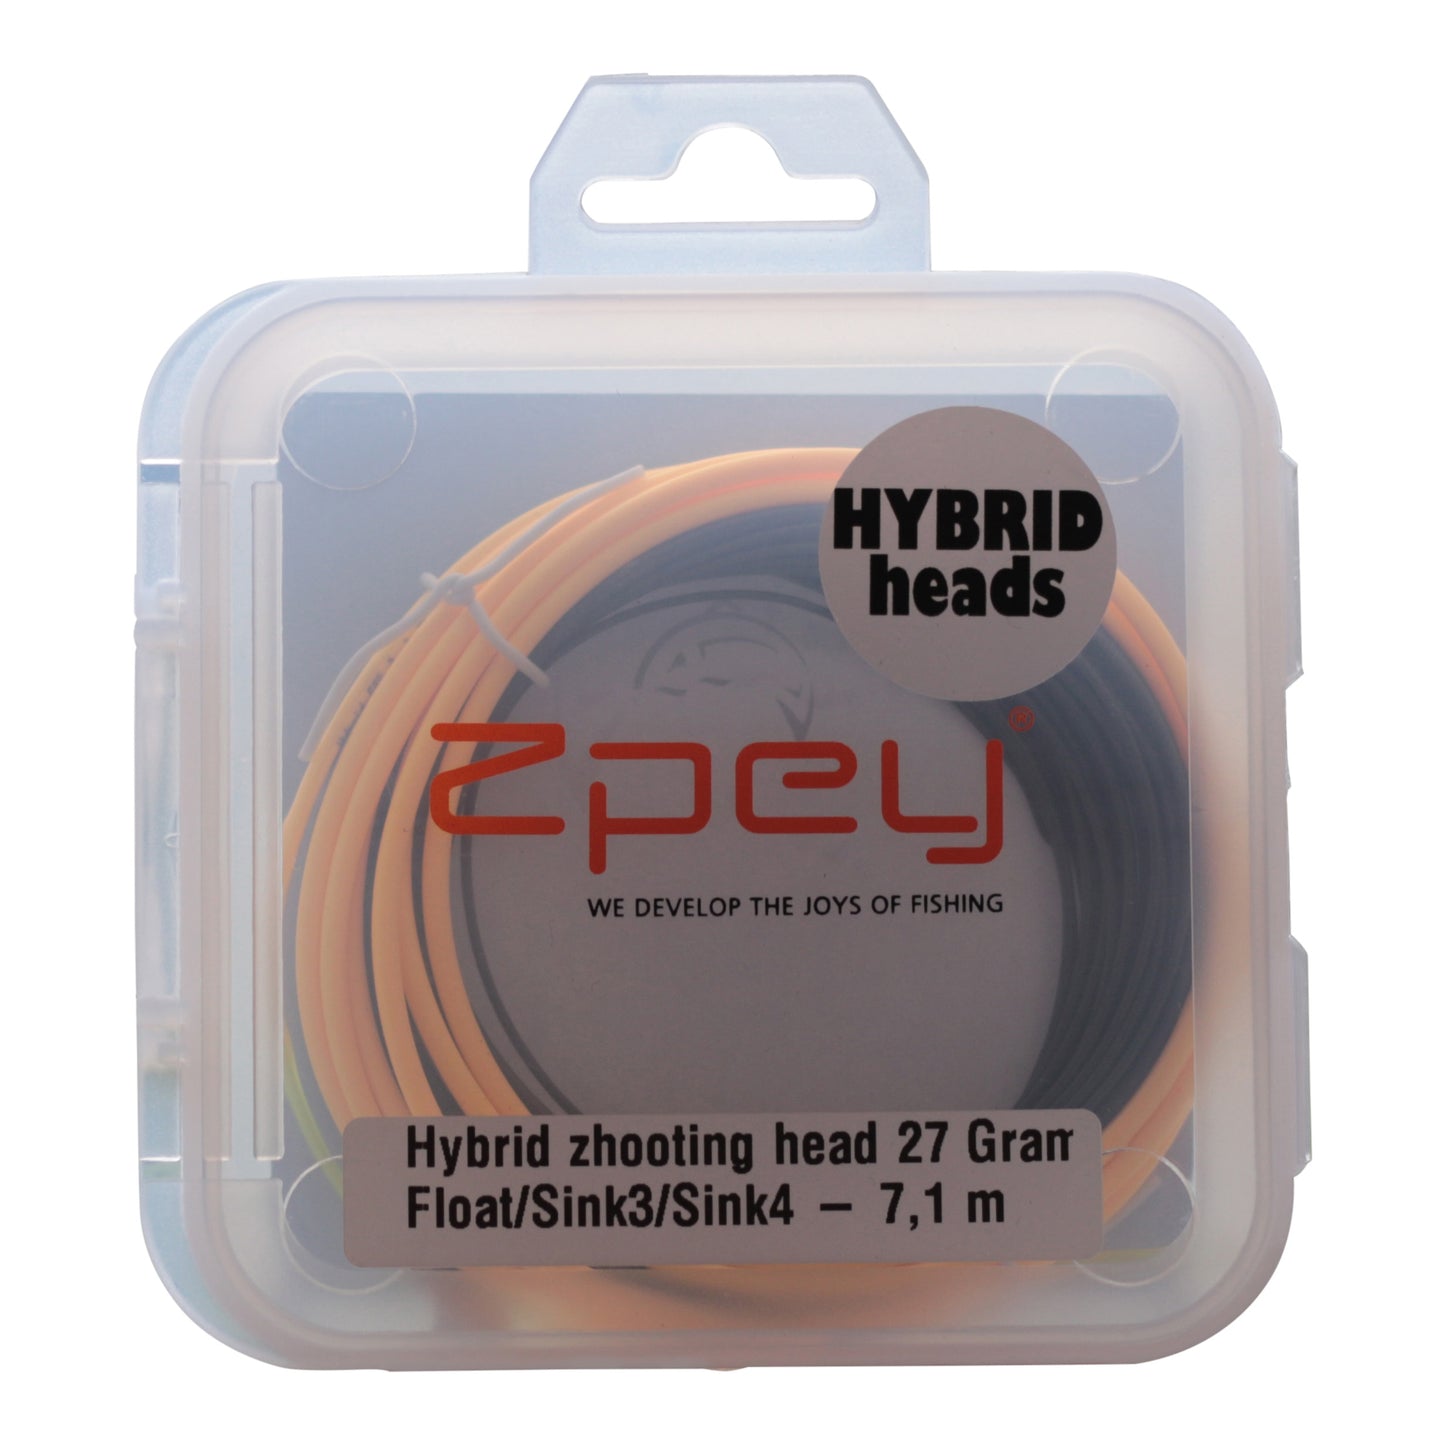 Zpey Hybrid Shootinghead, Float/Sink3/Sink4